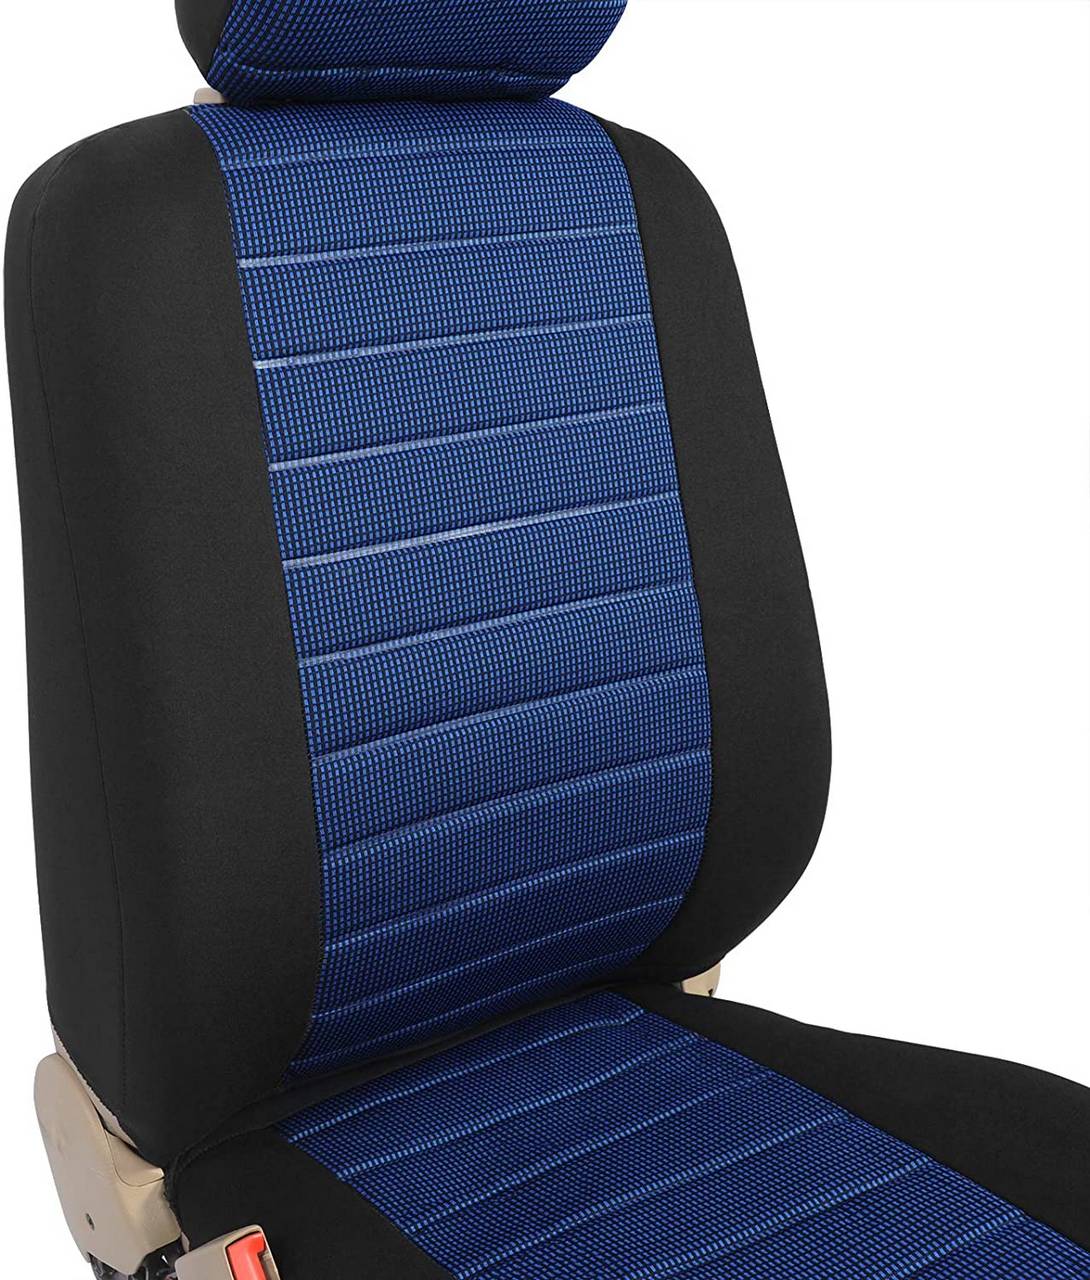 Sitzbezug 7232 VAN Sitzbezüge Schonbezüge Sitzbezug universal Sitze Kariert  Blau